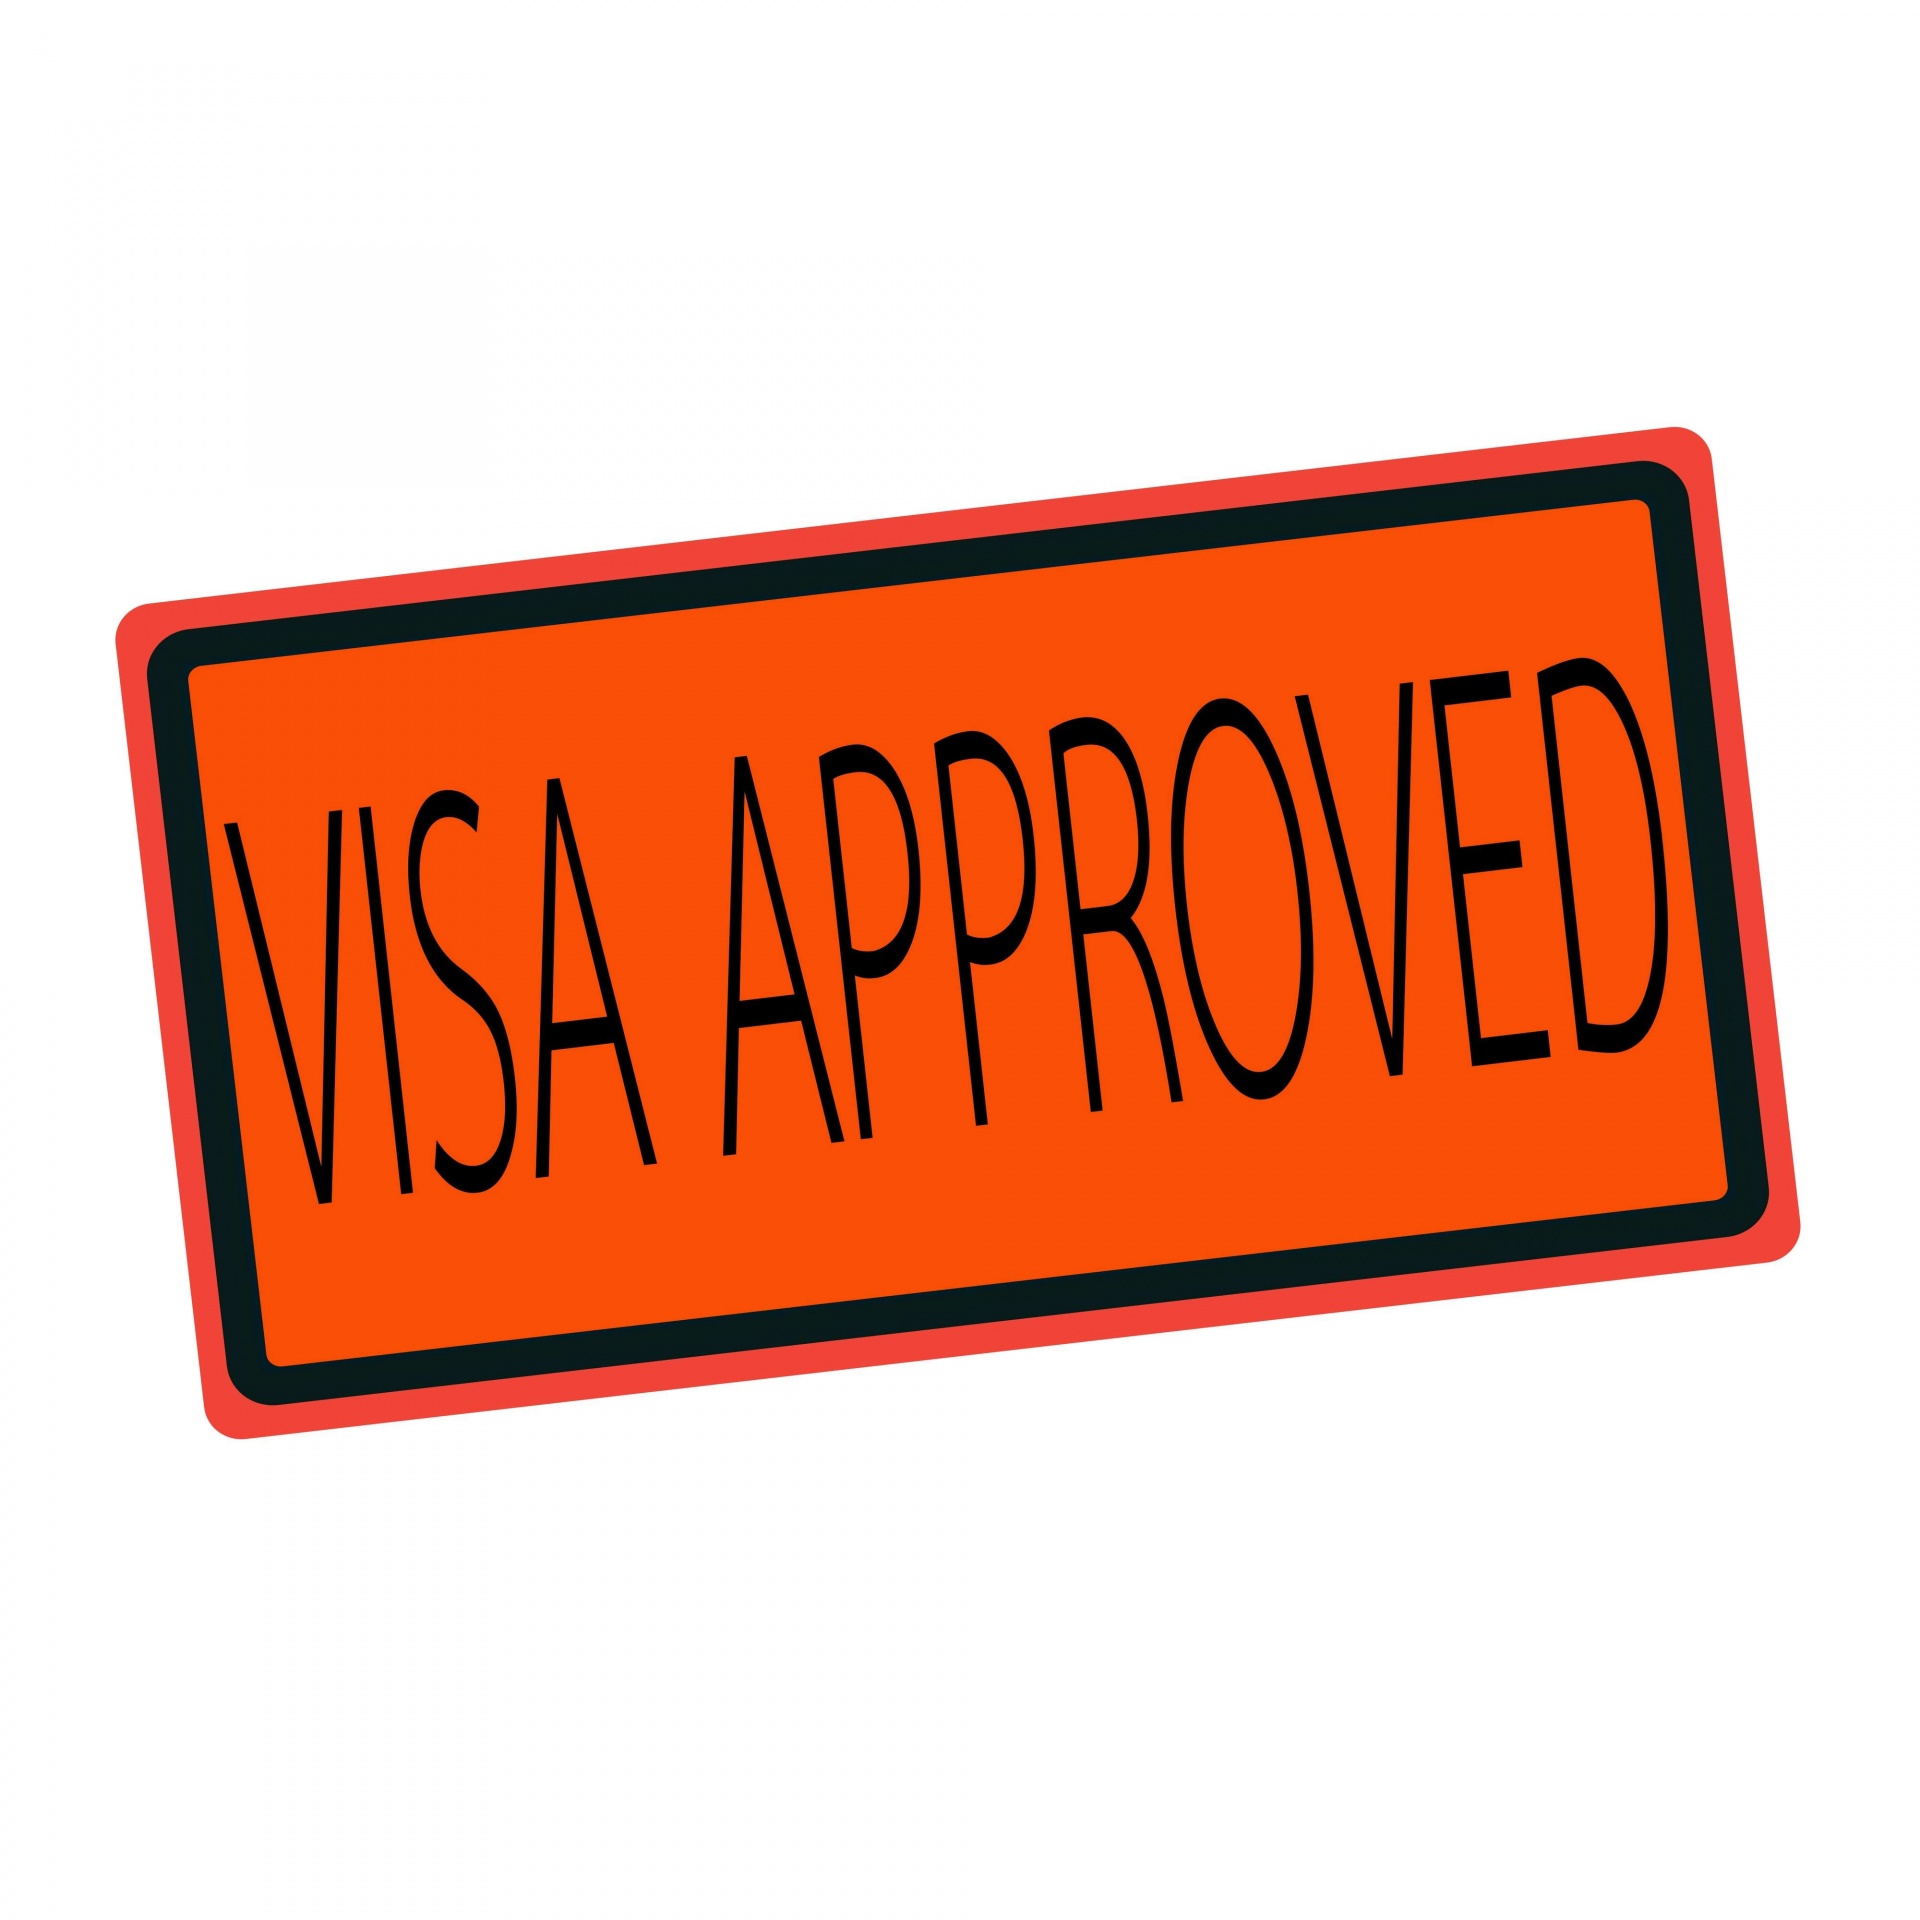 Visa Approved Black Stamp Text On Orange